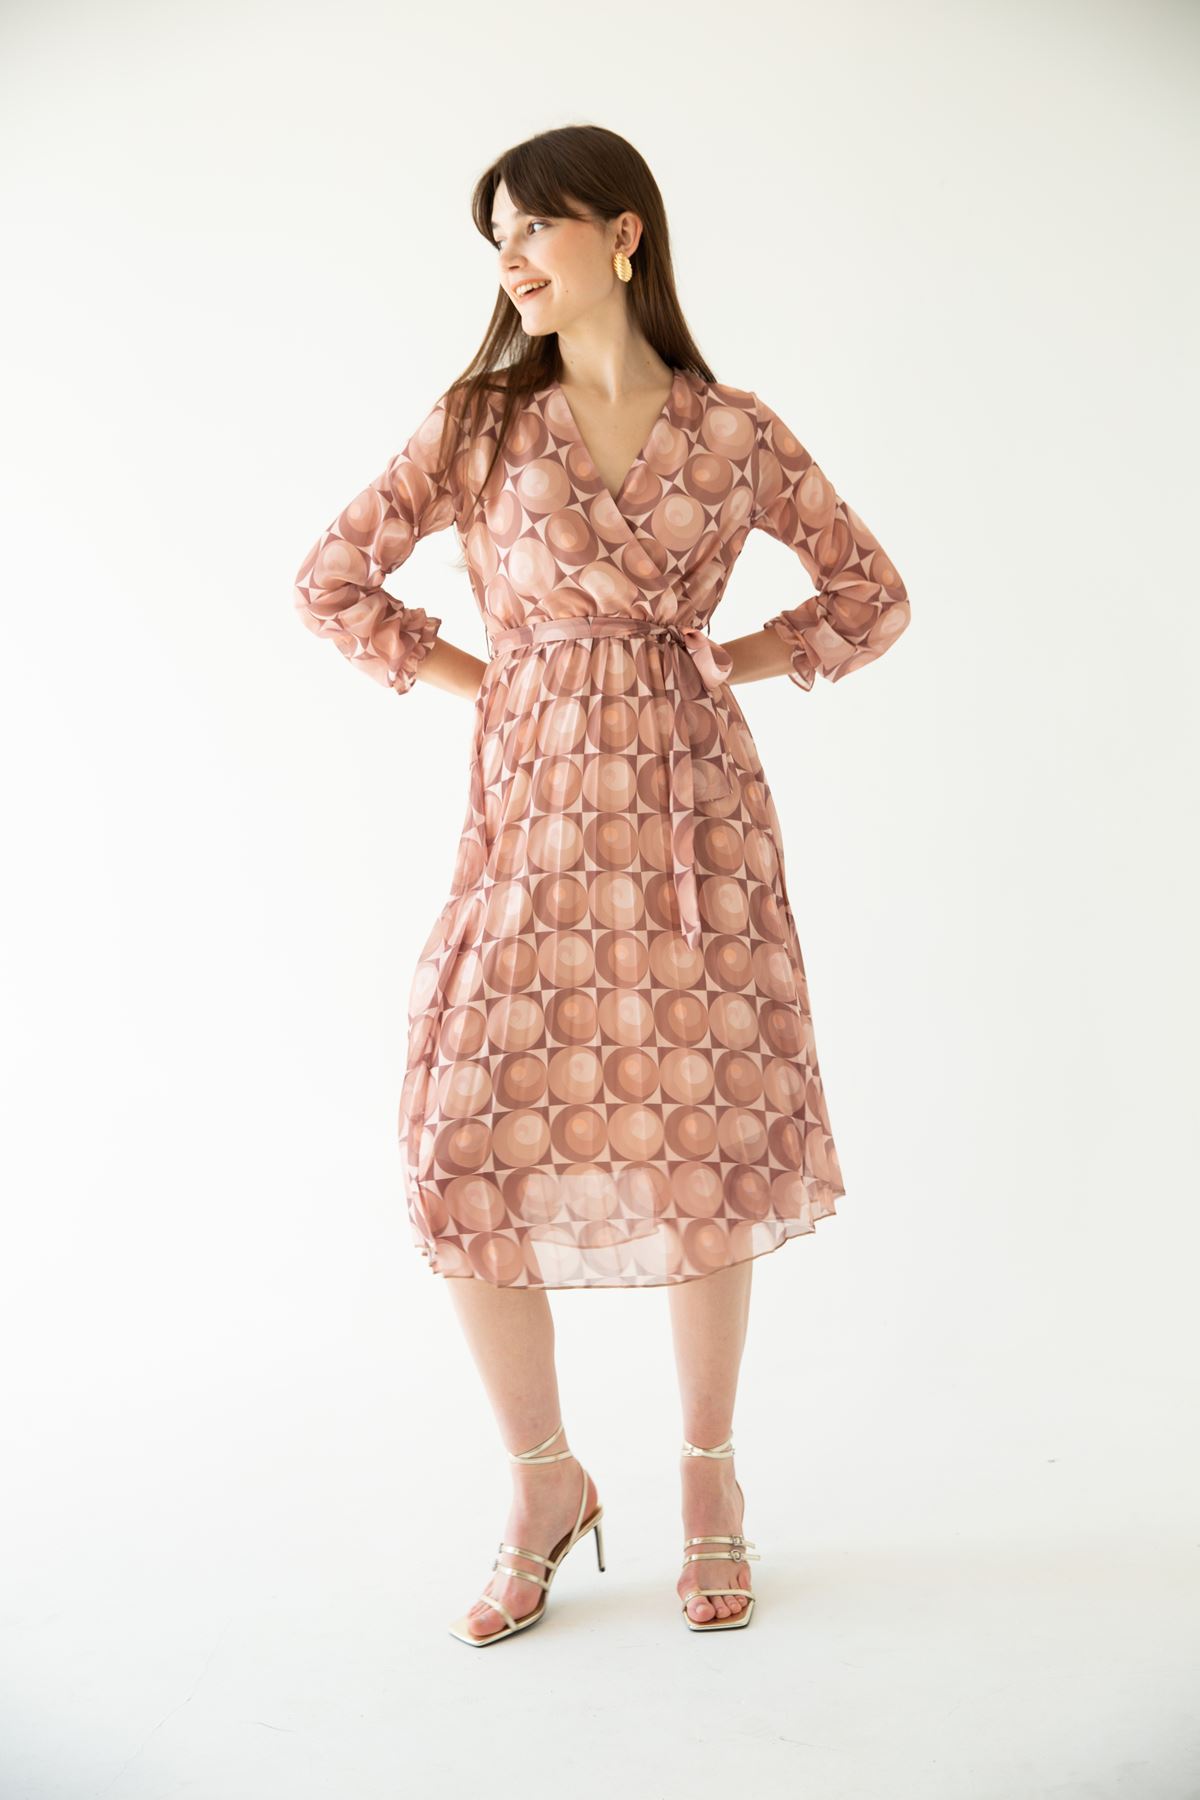 Chiffon Fabric Band Neck Geometric Pattern Women Dress-Brown